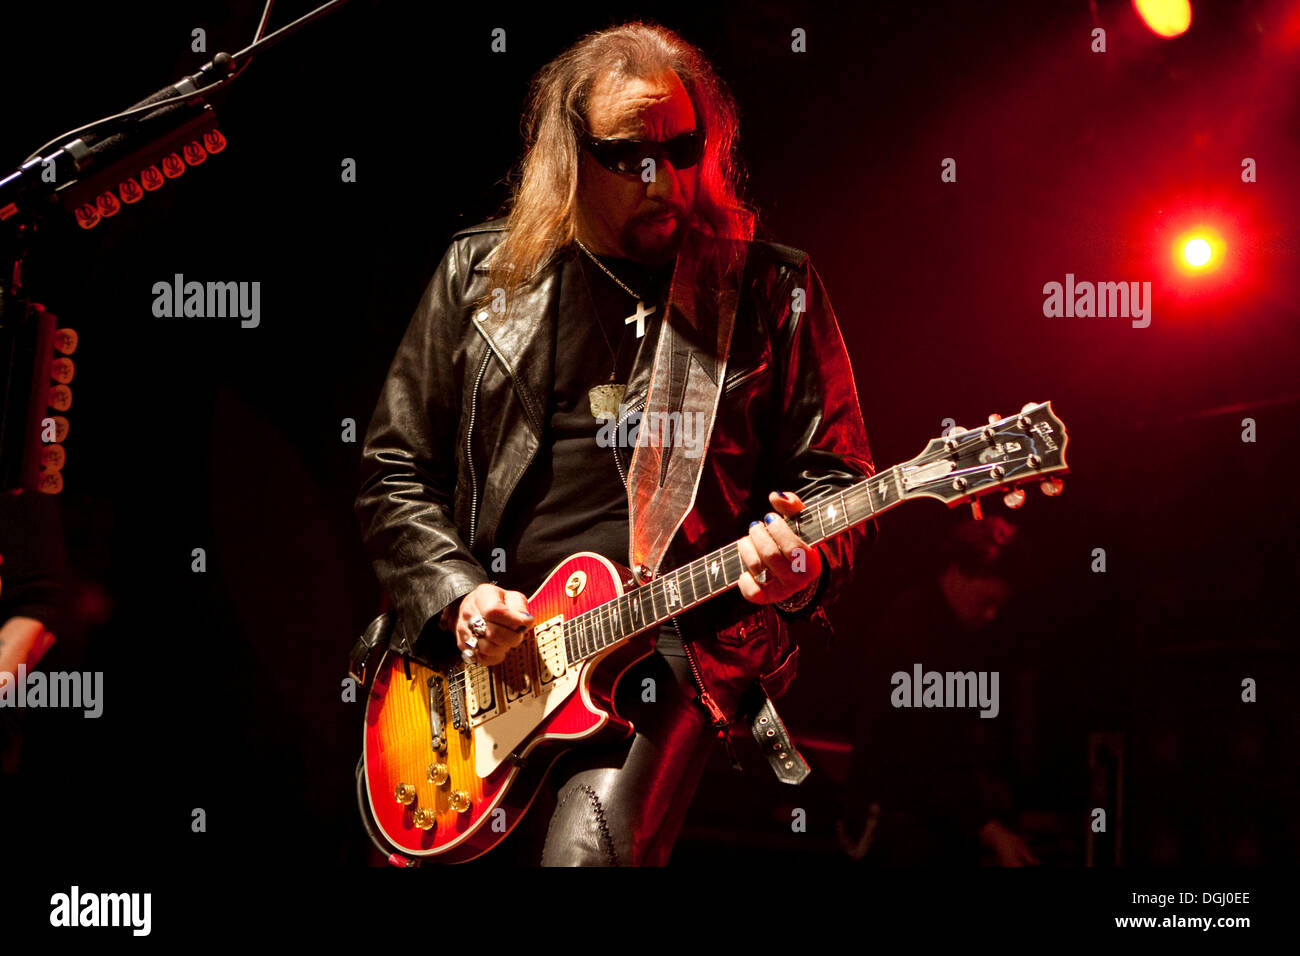 US-Musiker und Ex-KISS Gitarrist Ace Frehley live auf Schueuer  Veranstaltungsort für Konzerte, Luzern, Schweiz Stockfotografie - Alamy